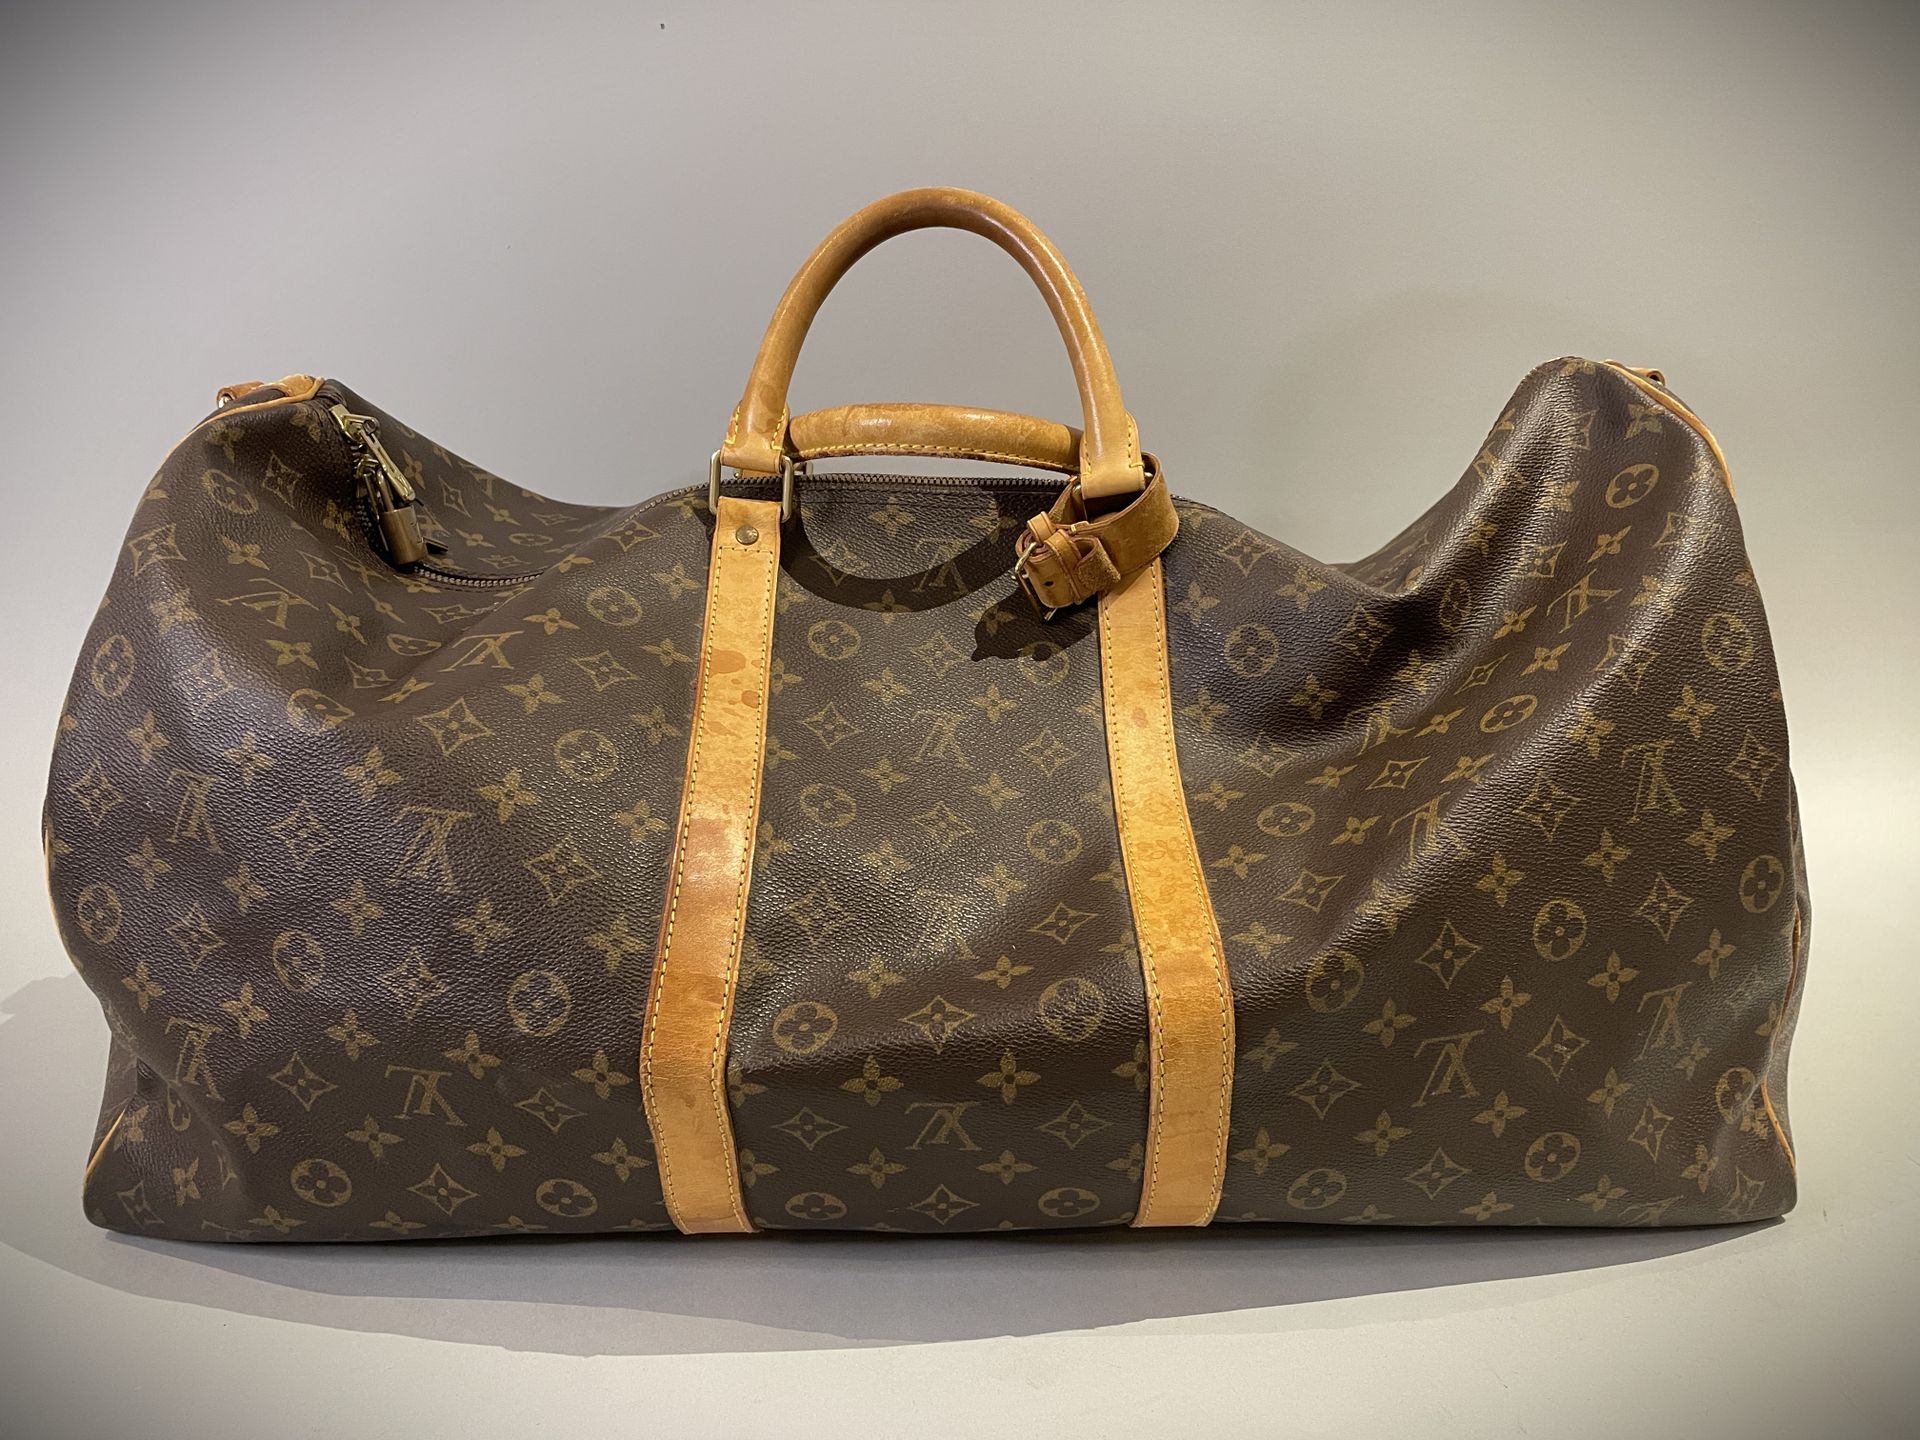 Louis VUITTON Paris Weekend bag Keepall model in monogra…